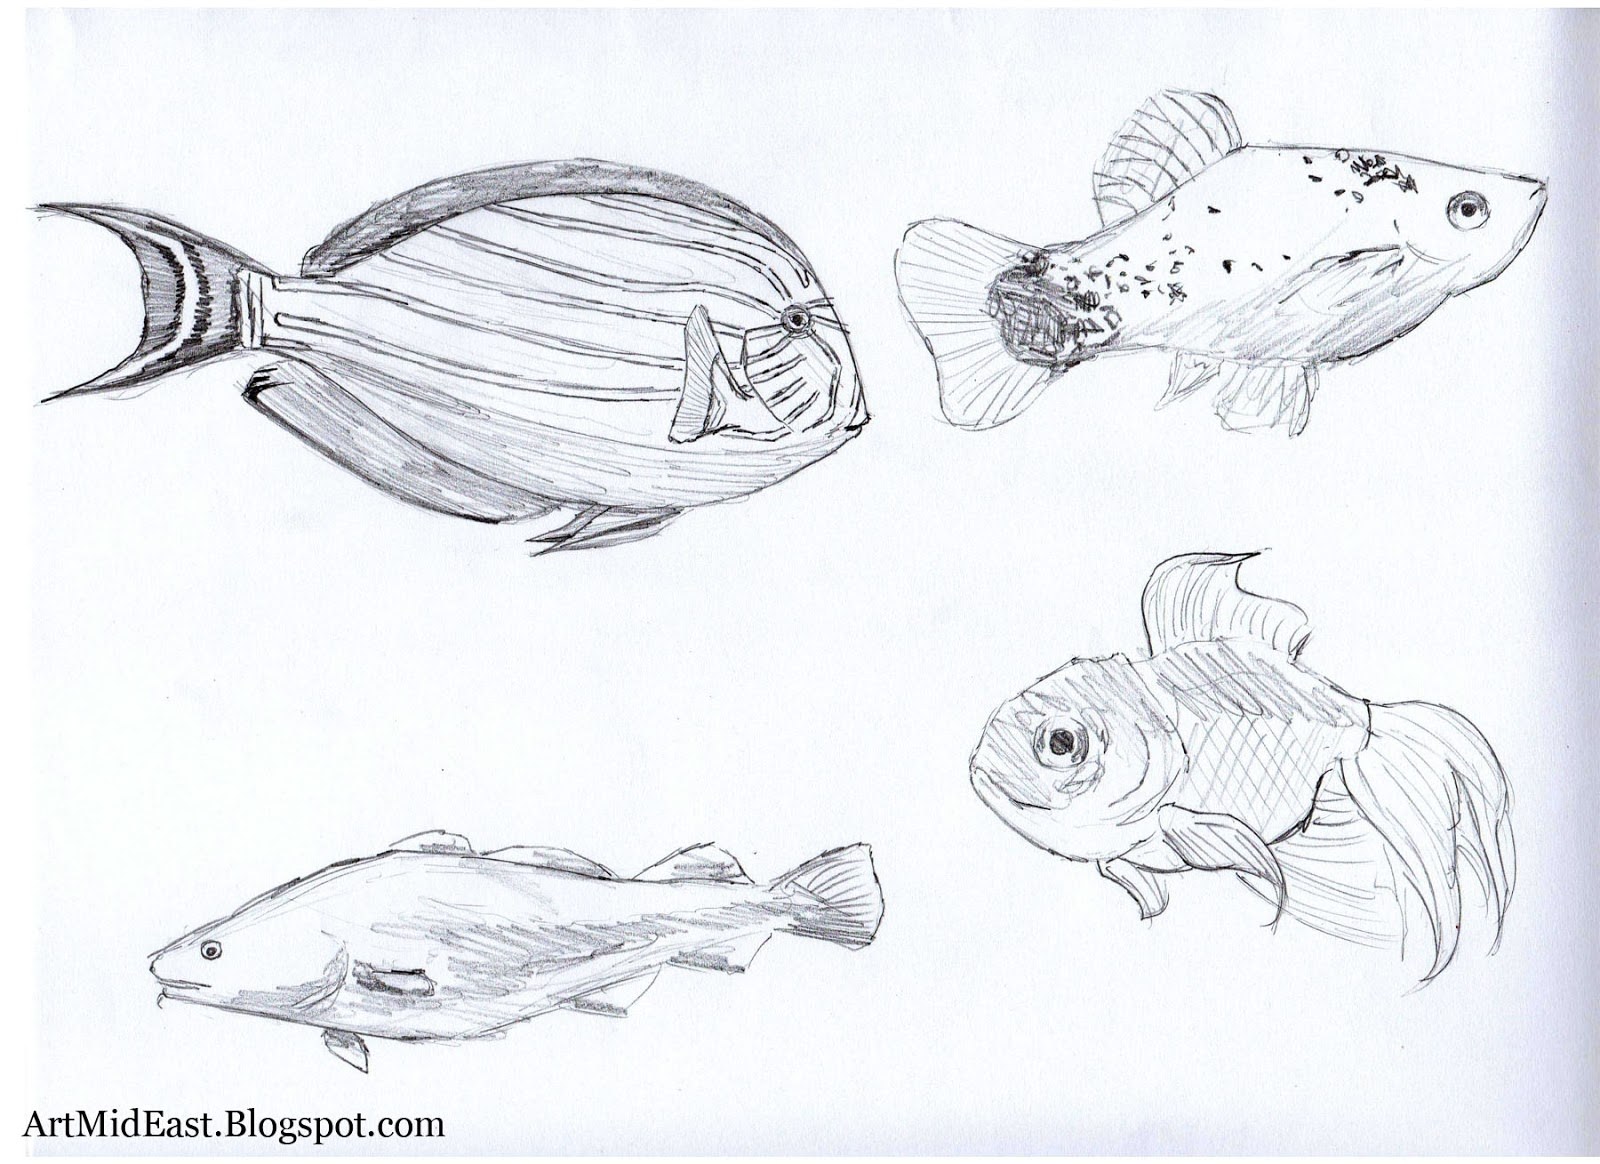 Рисунок рыбы для срисовки. Рыба рисовка. Красивые и легкие рисунки рыб. Рисунки для срисовки рыбы легкие. Рыба карандаш фото.